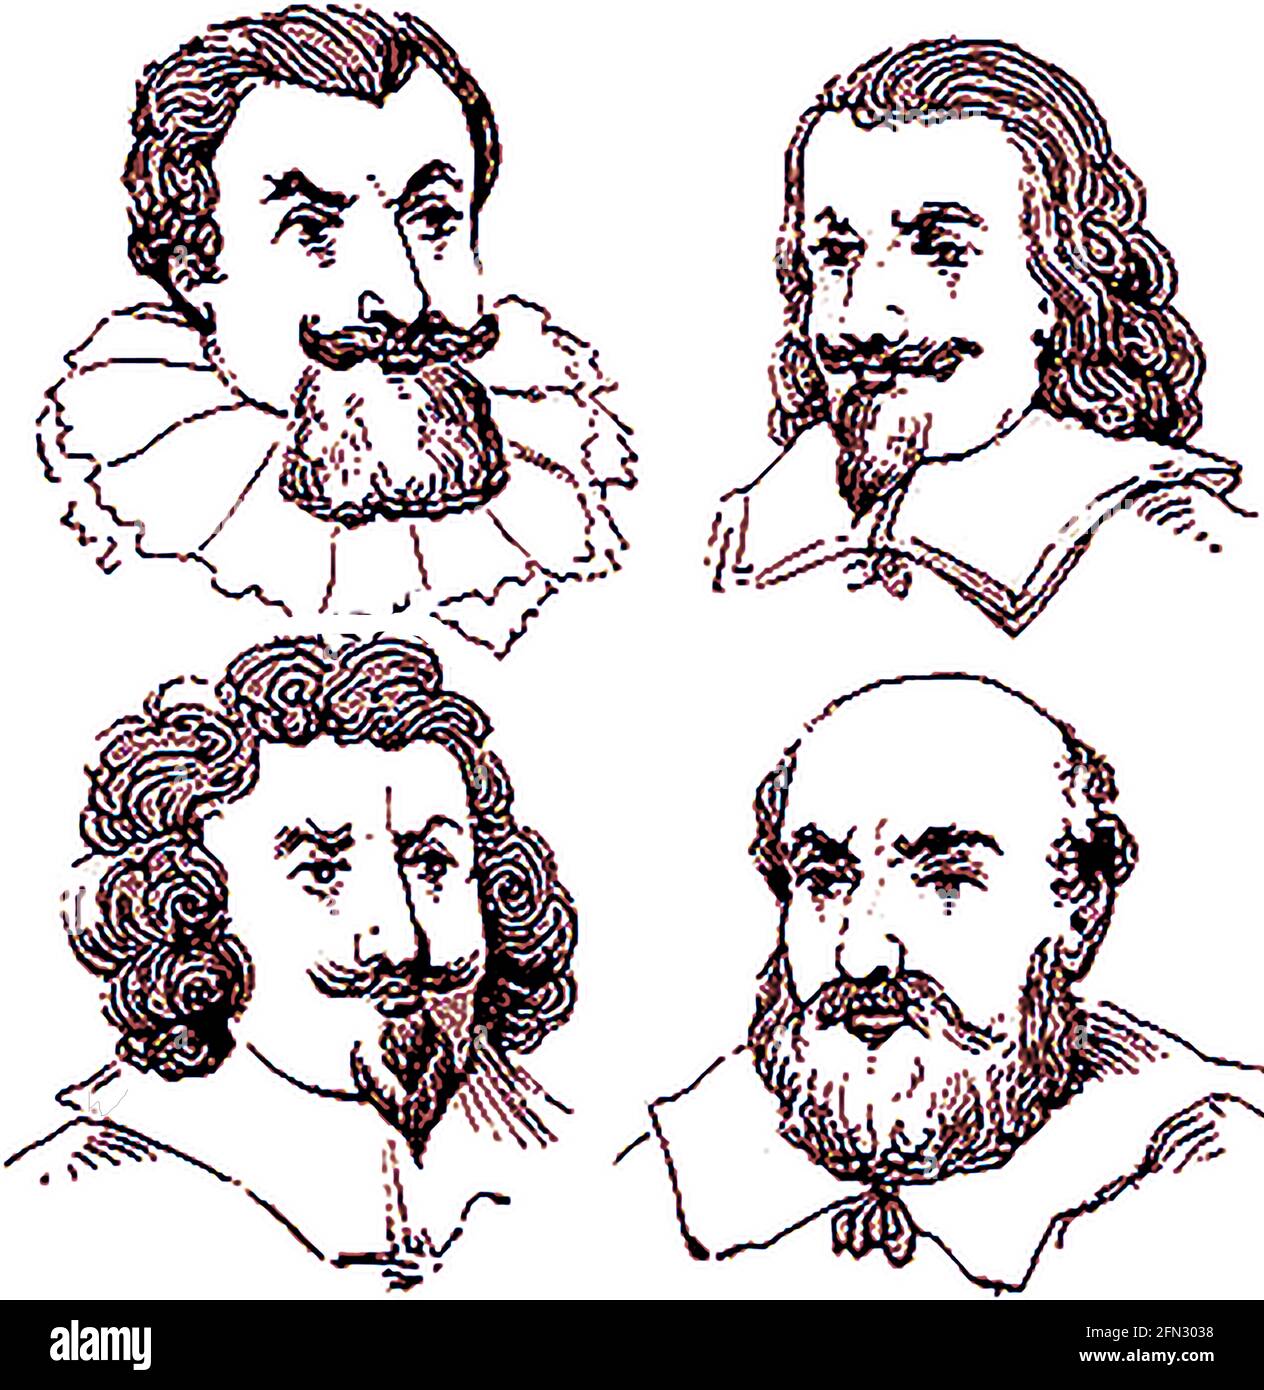 Arten von Bart im 16. Jahrhundert üblich. ------ Im 15. Jahrhundert wurden die meisten europäischen Männer von den Bärten des 16. Jahrhunderts sauber geschüttelt und waren recht häufig und in ihrem Stil verschieden. Stockfoto